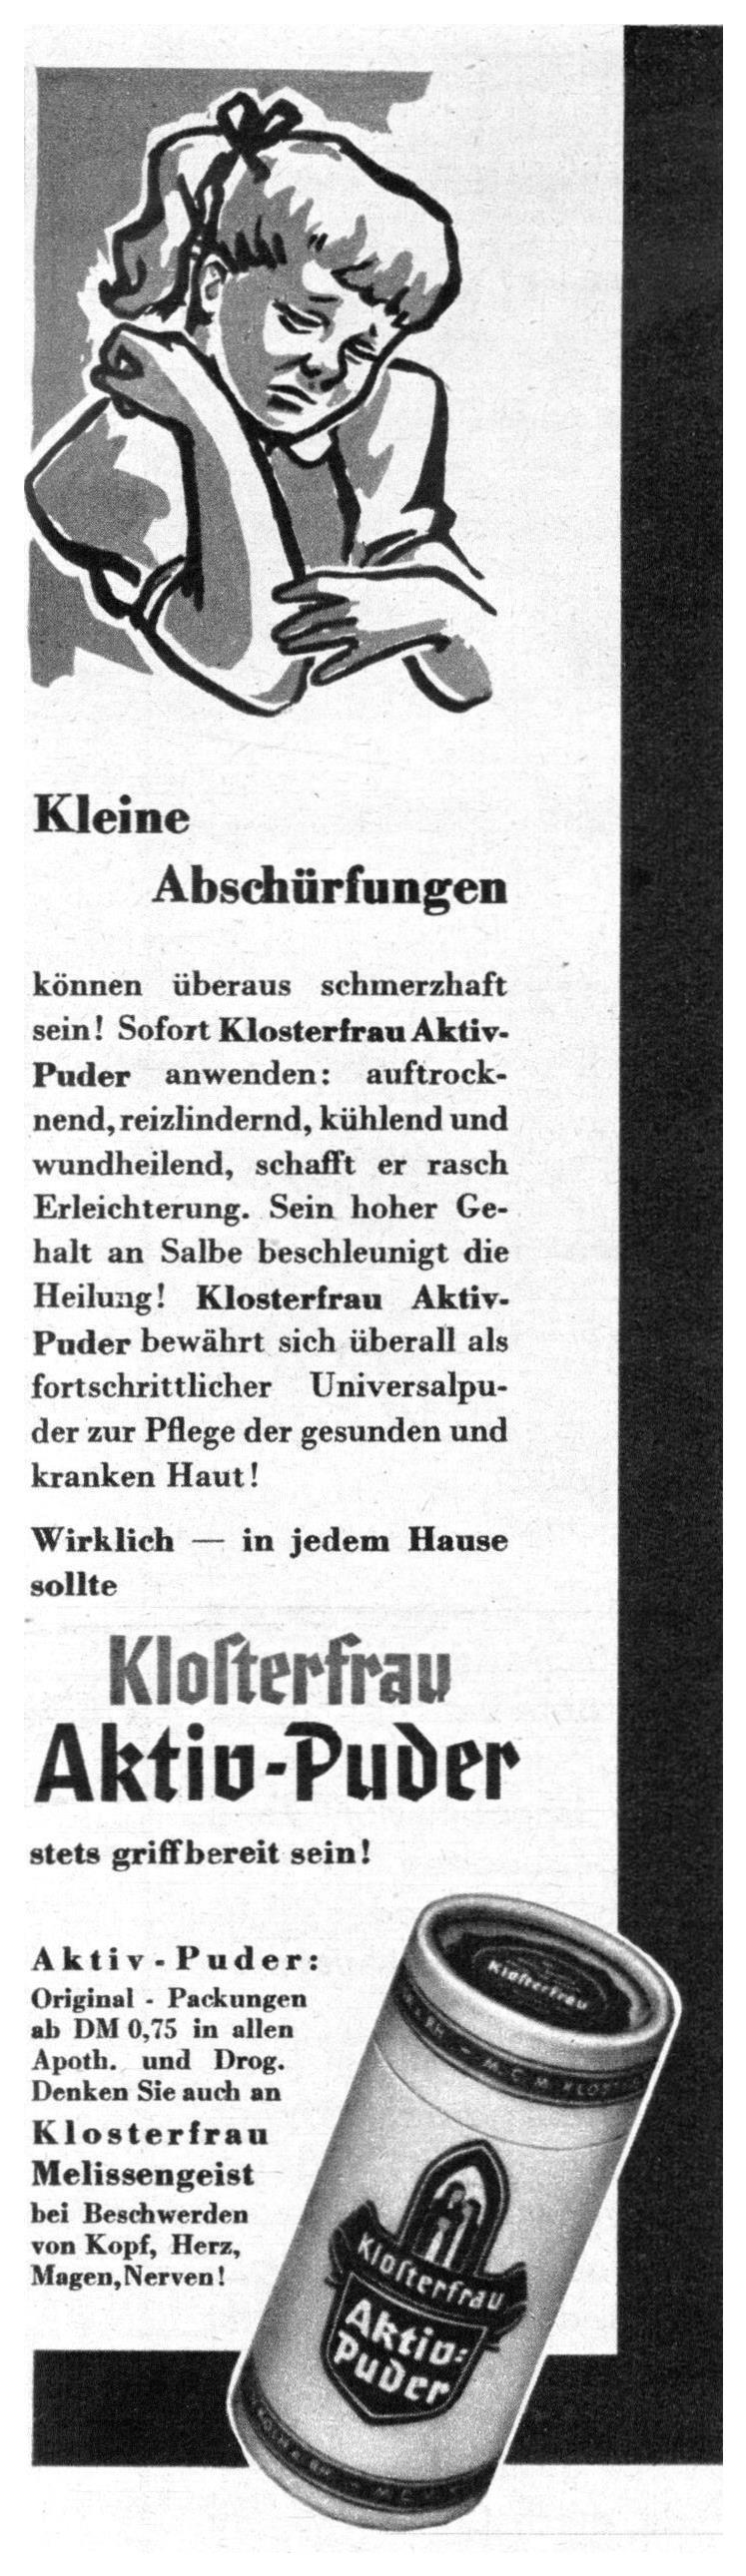 Klosterfrau 1953 5.jpg